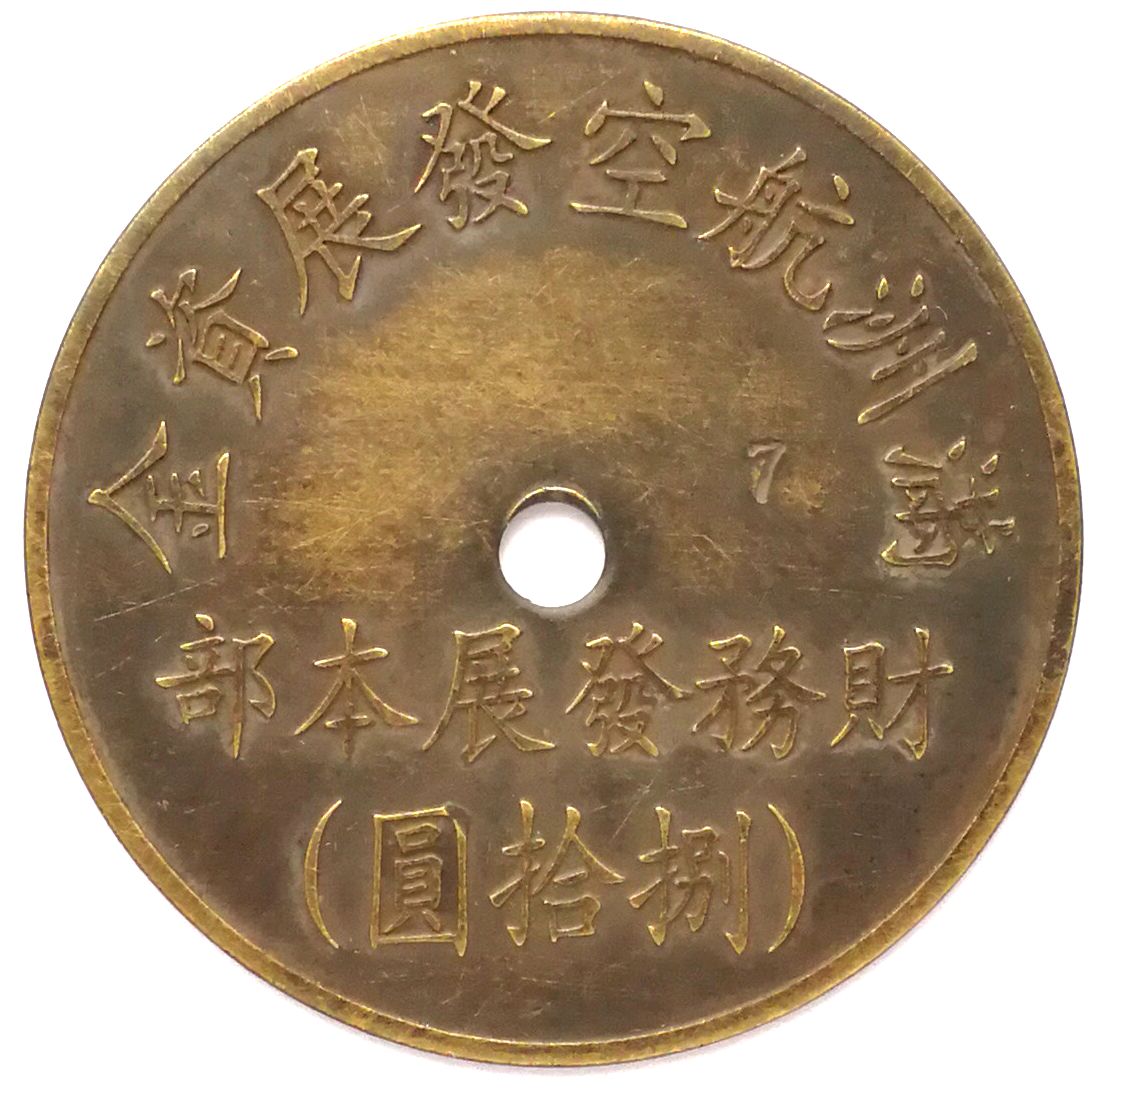 BT488, Manchukuo Aviation Development Fund, 80 Yen Token, 1945